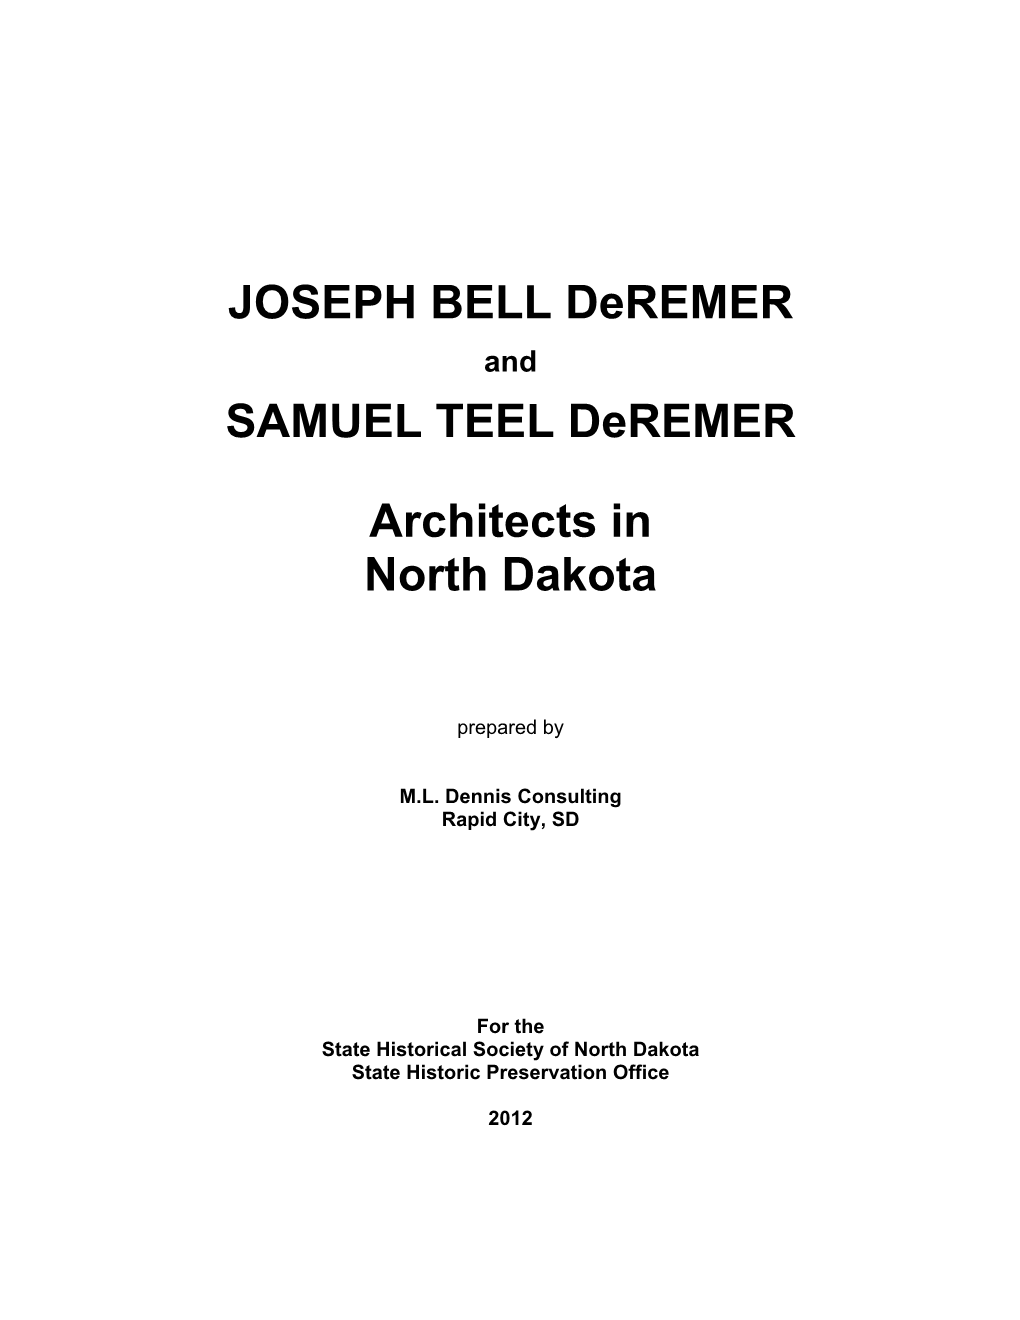 JOSEPH BELL Deremer SAMUEL TEEL Deremer Architects in North